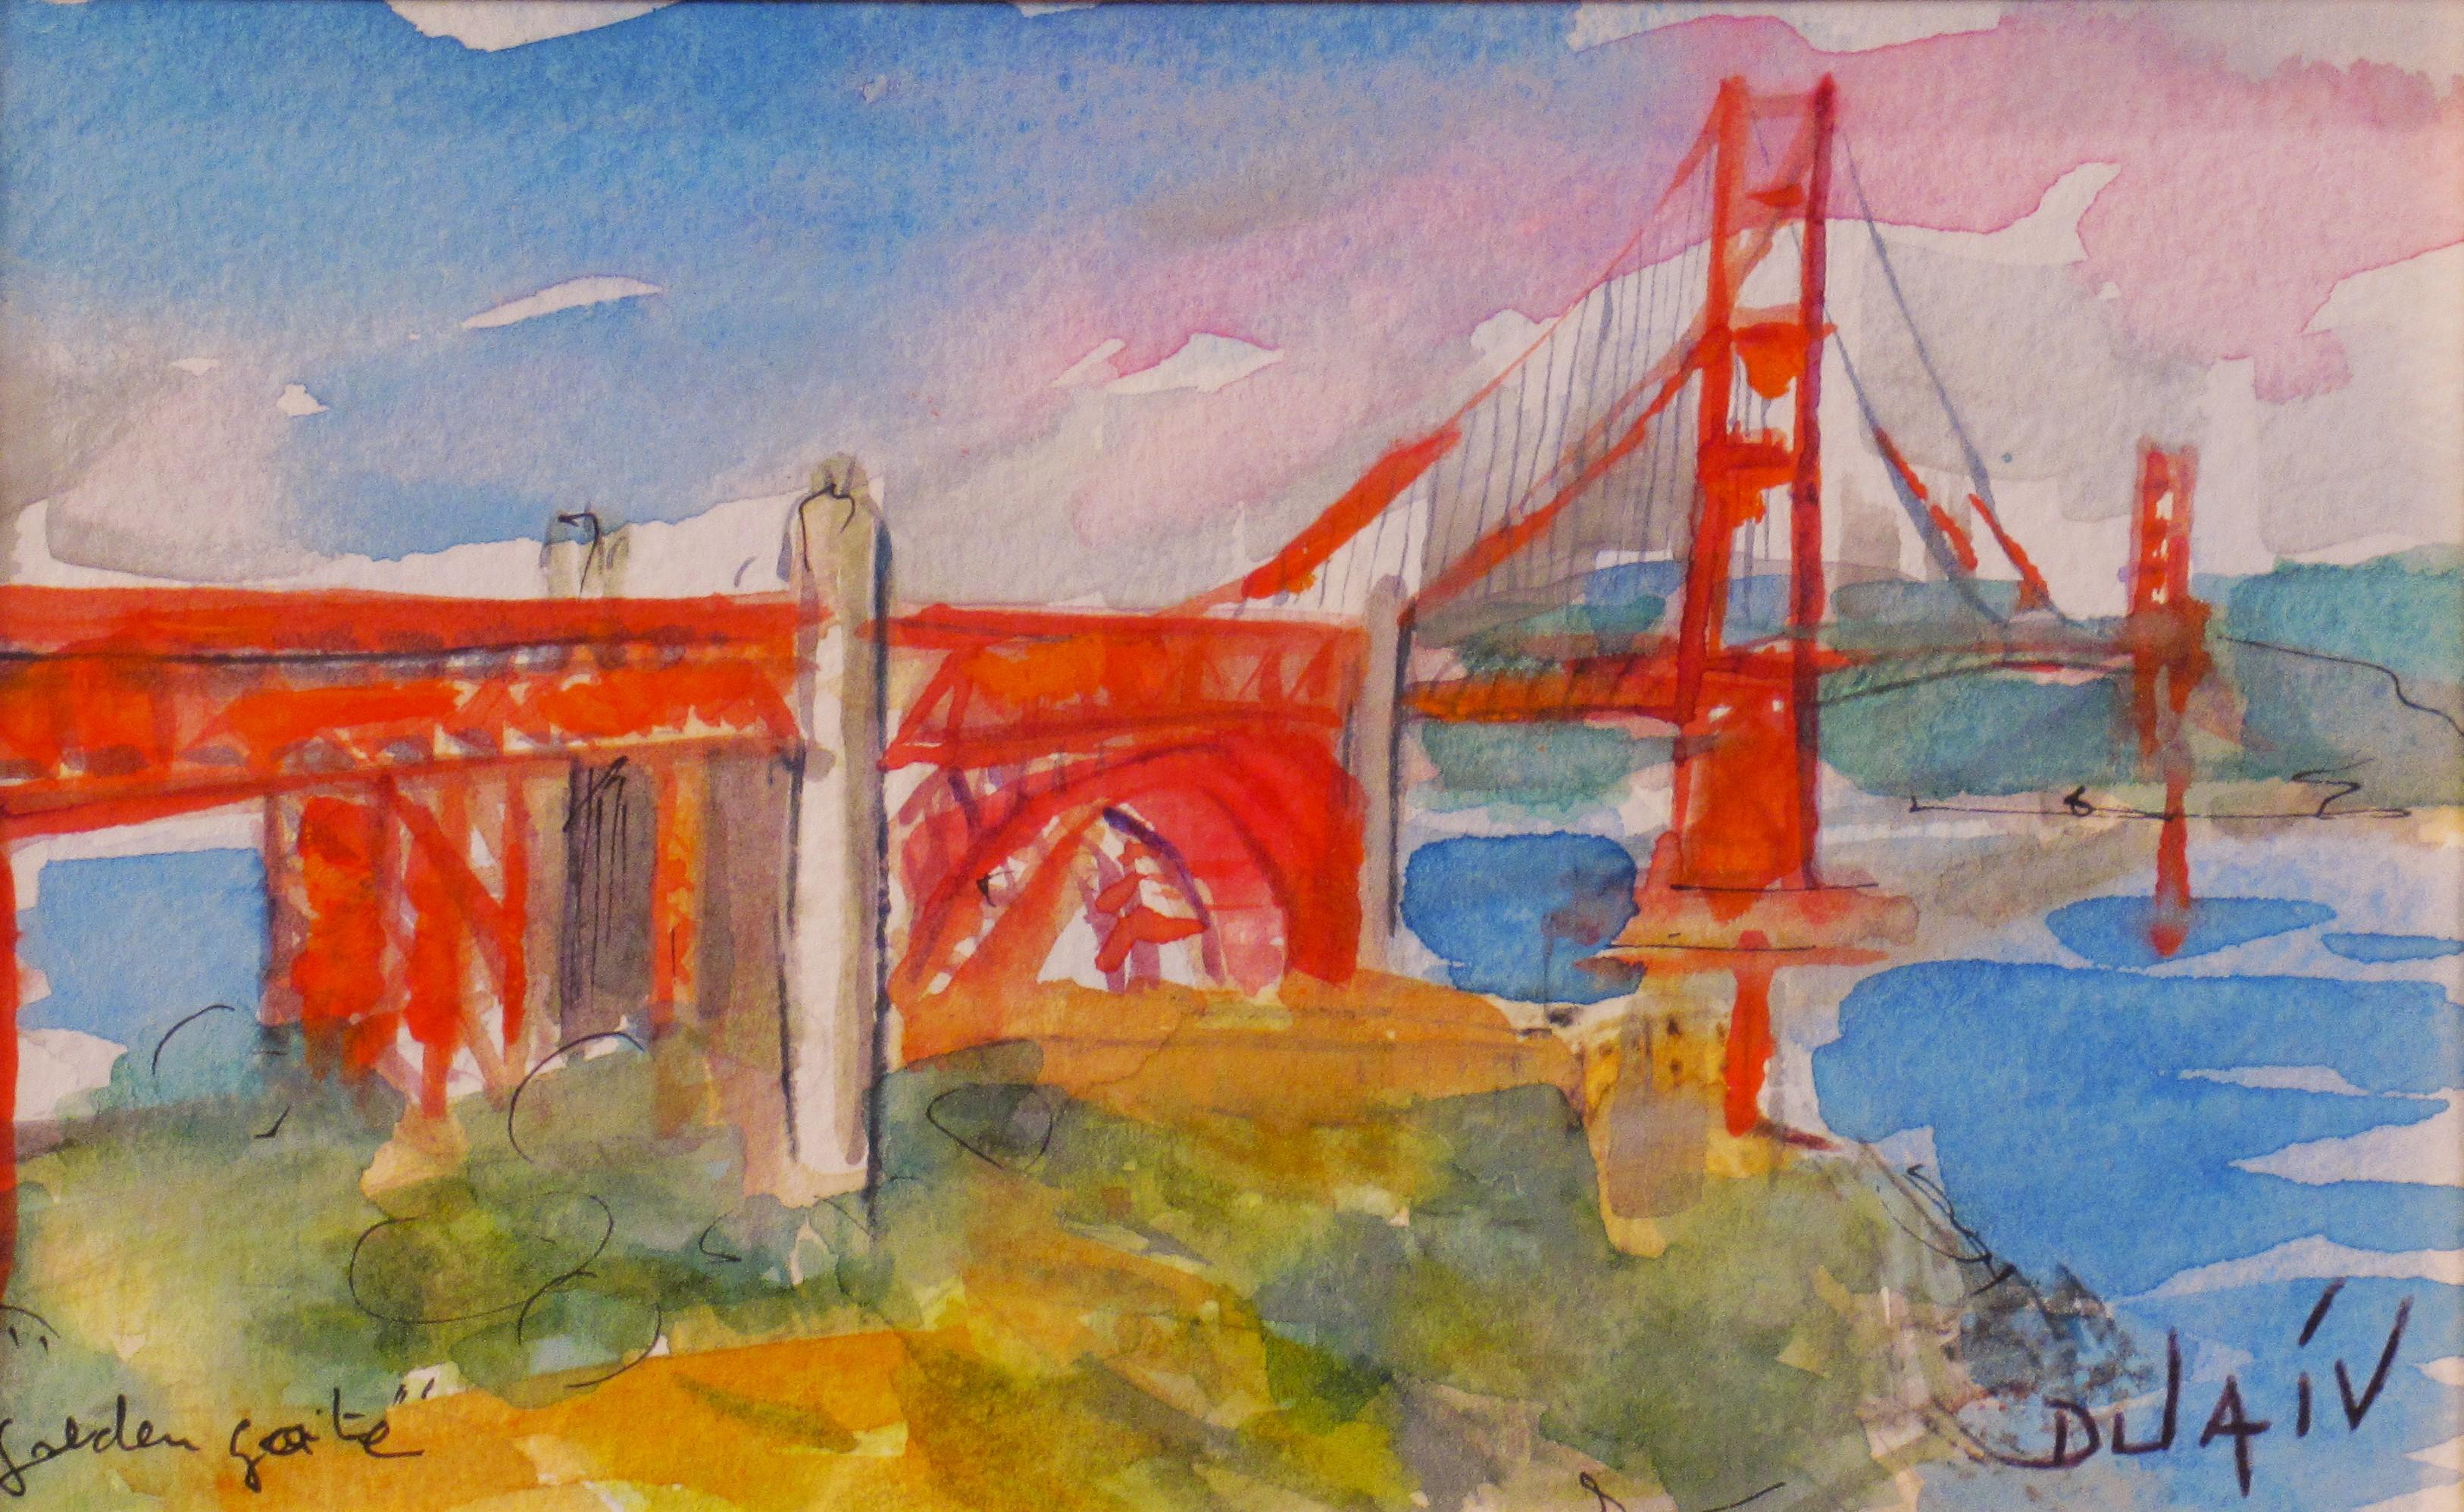 Golden Gate - Art by Duaiv 